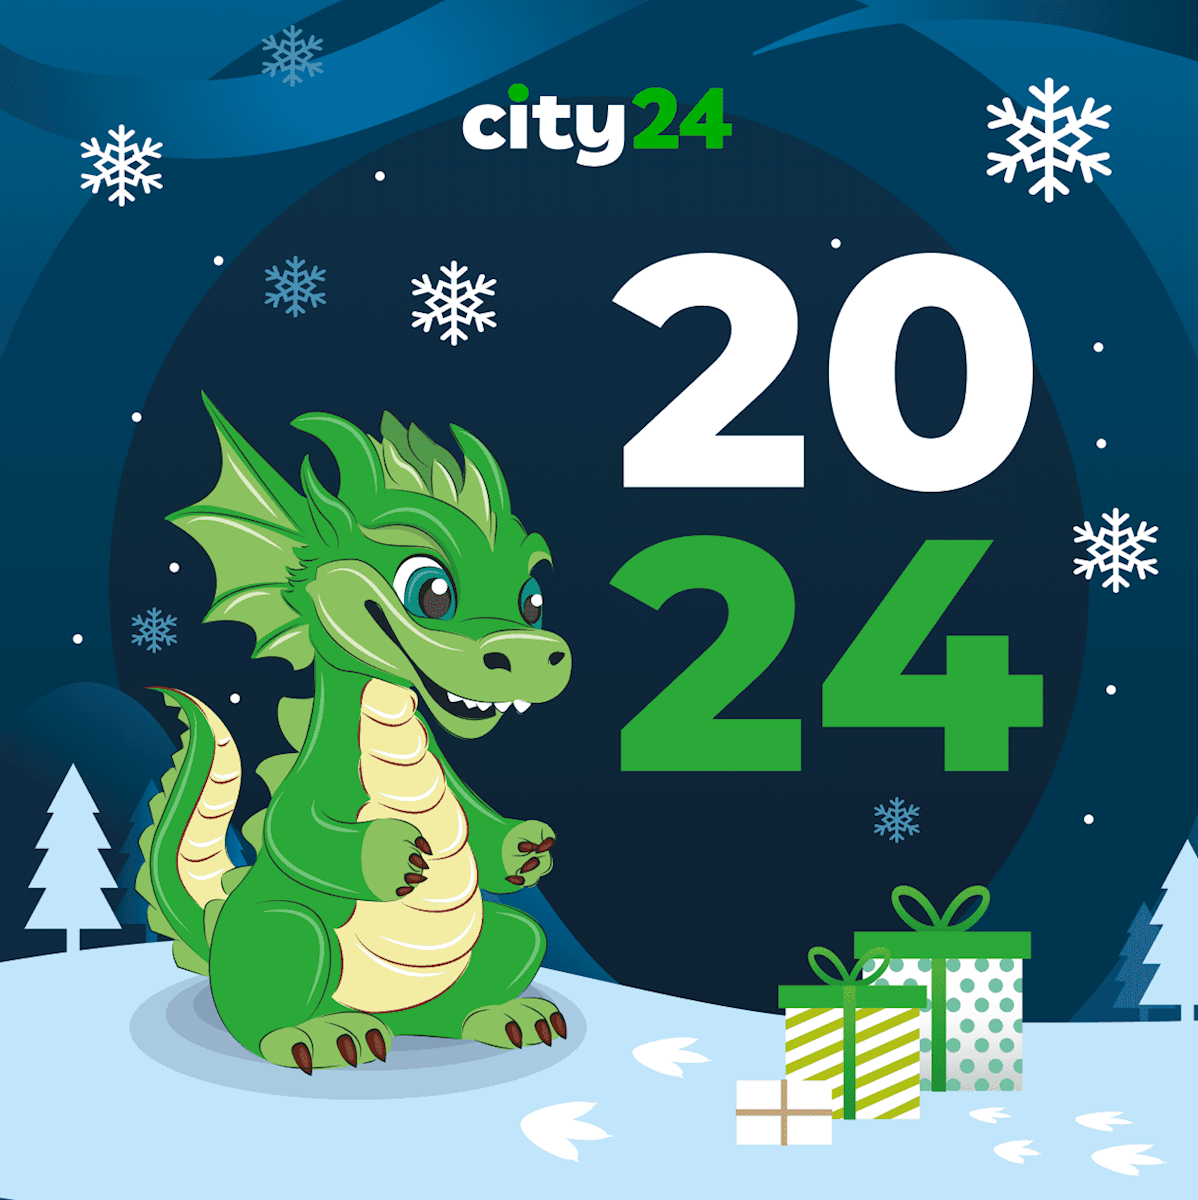 city24 вітає всіх з Новим роком та Різдвом Христовим!